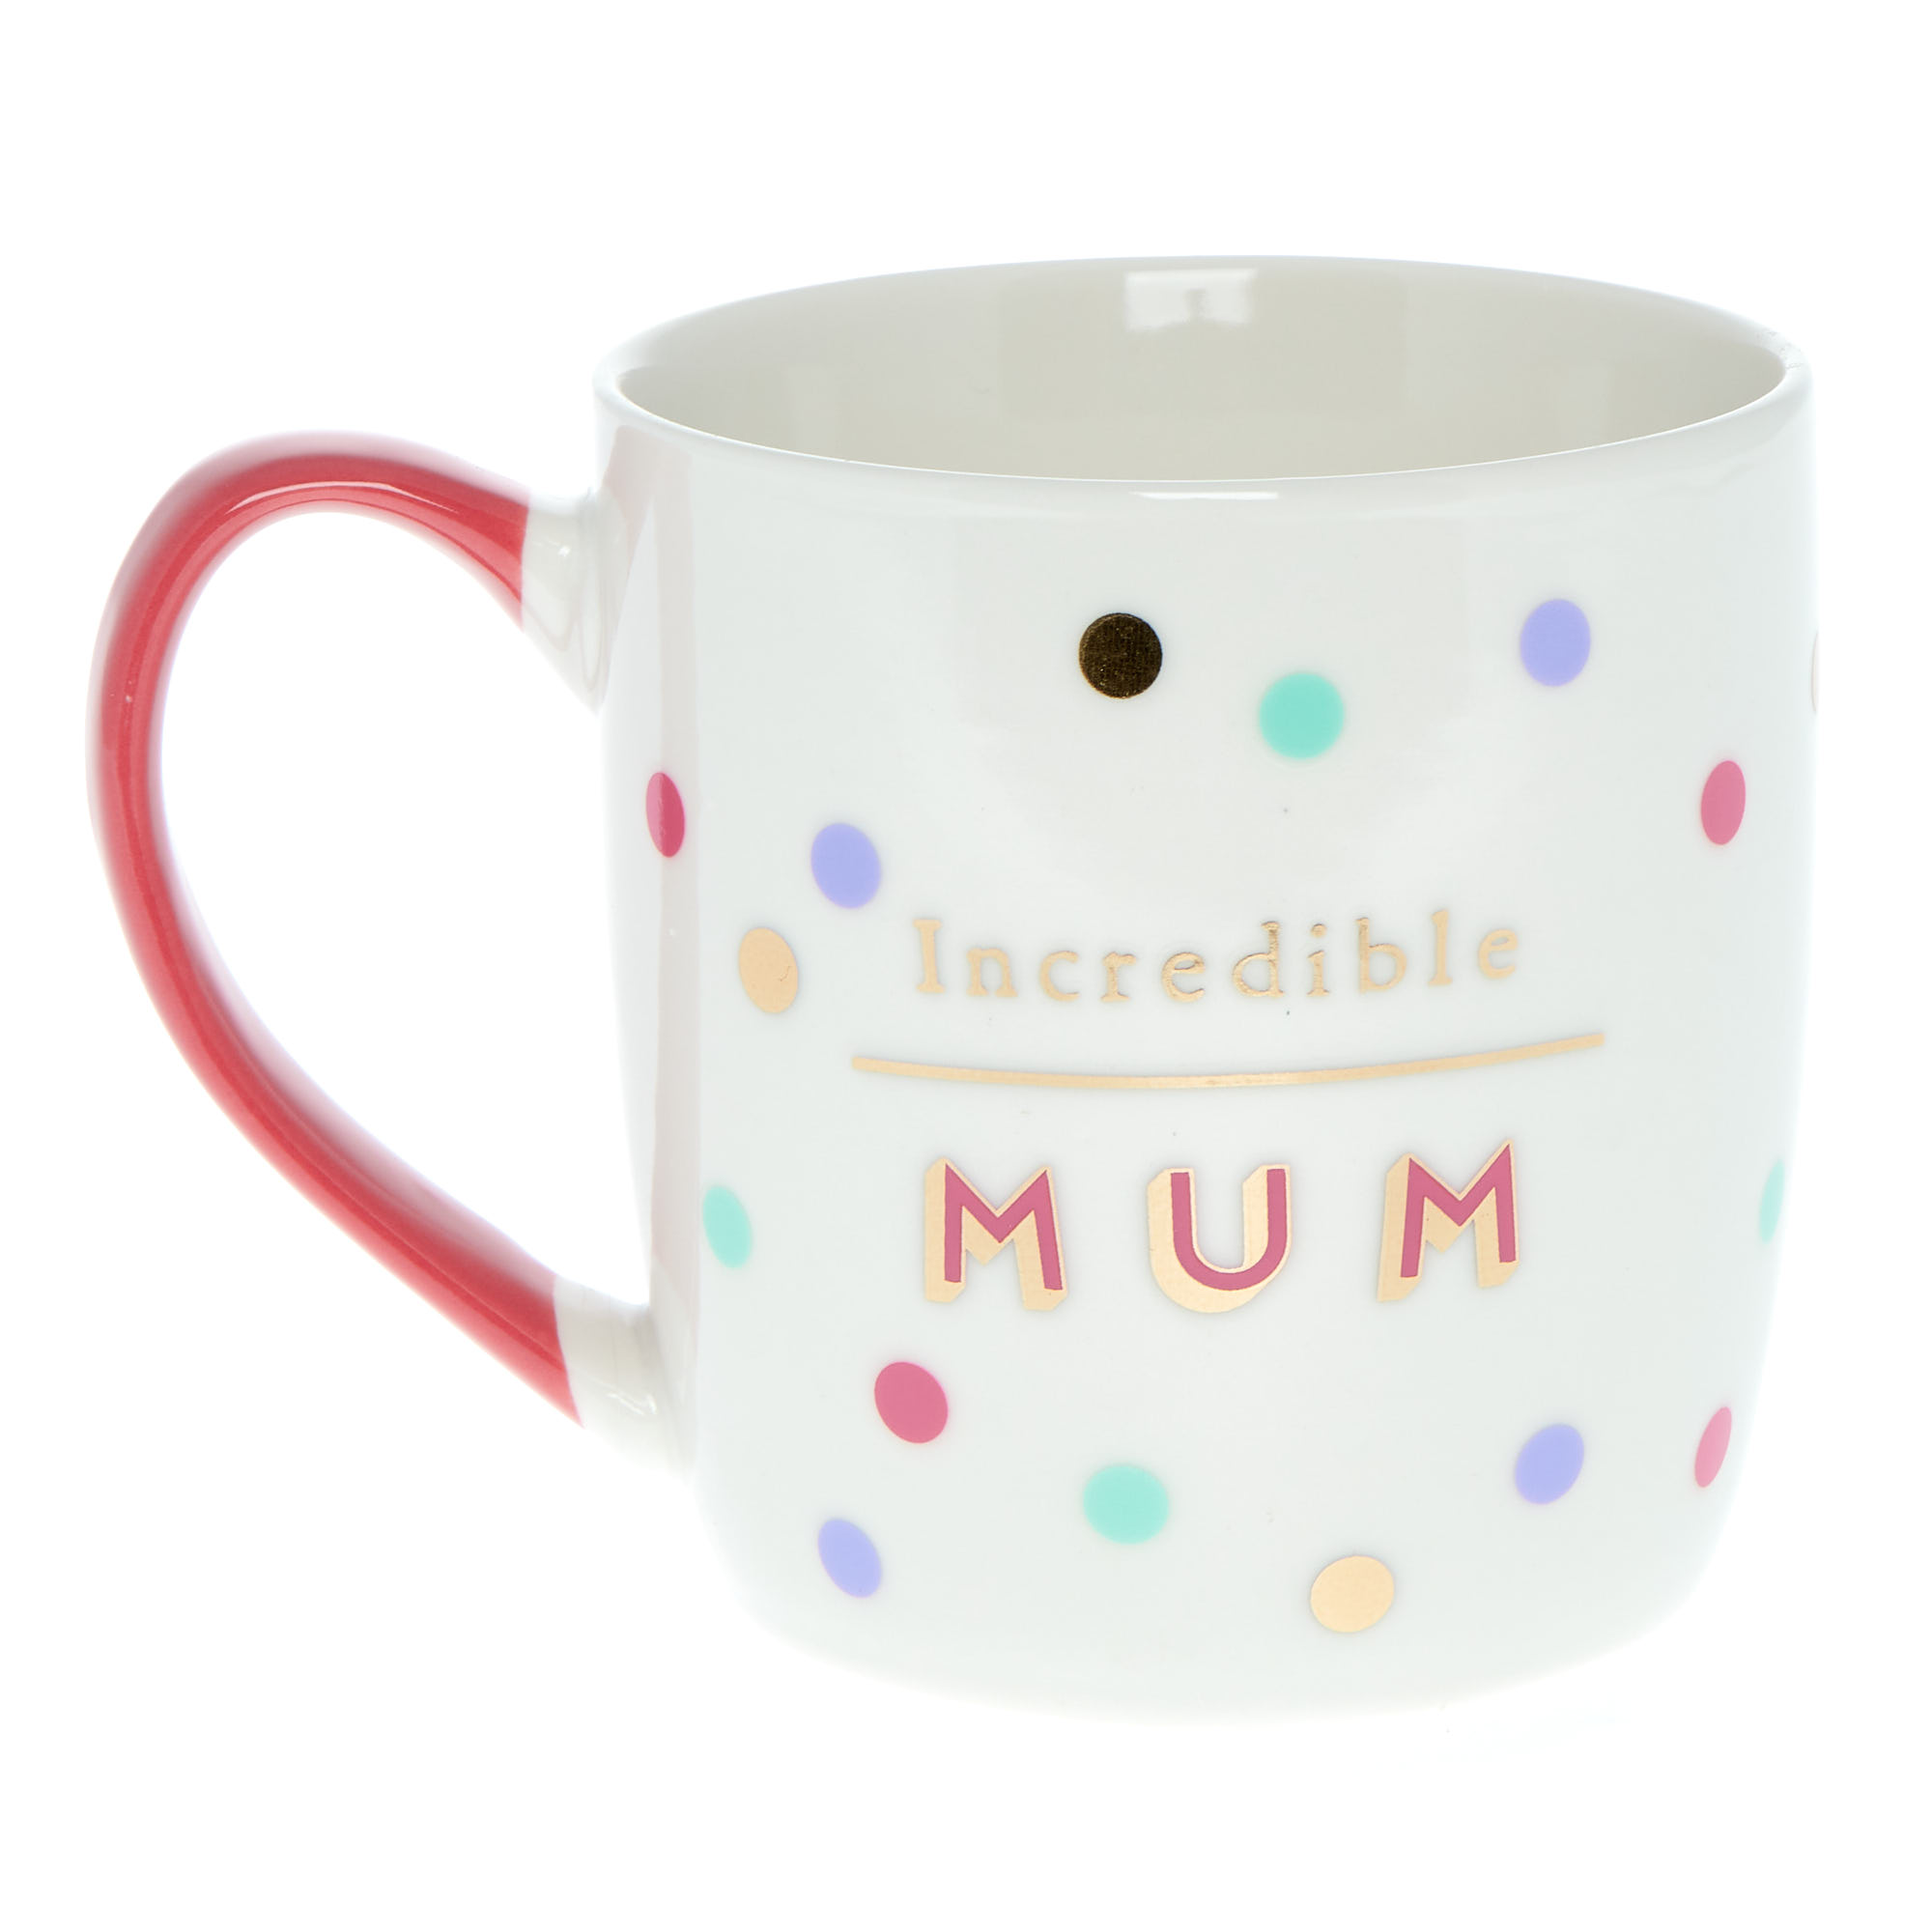 Buy Incredible Mum Mug For Gbp 499 Card Factory Uk 9848